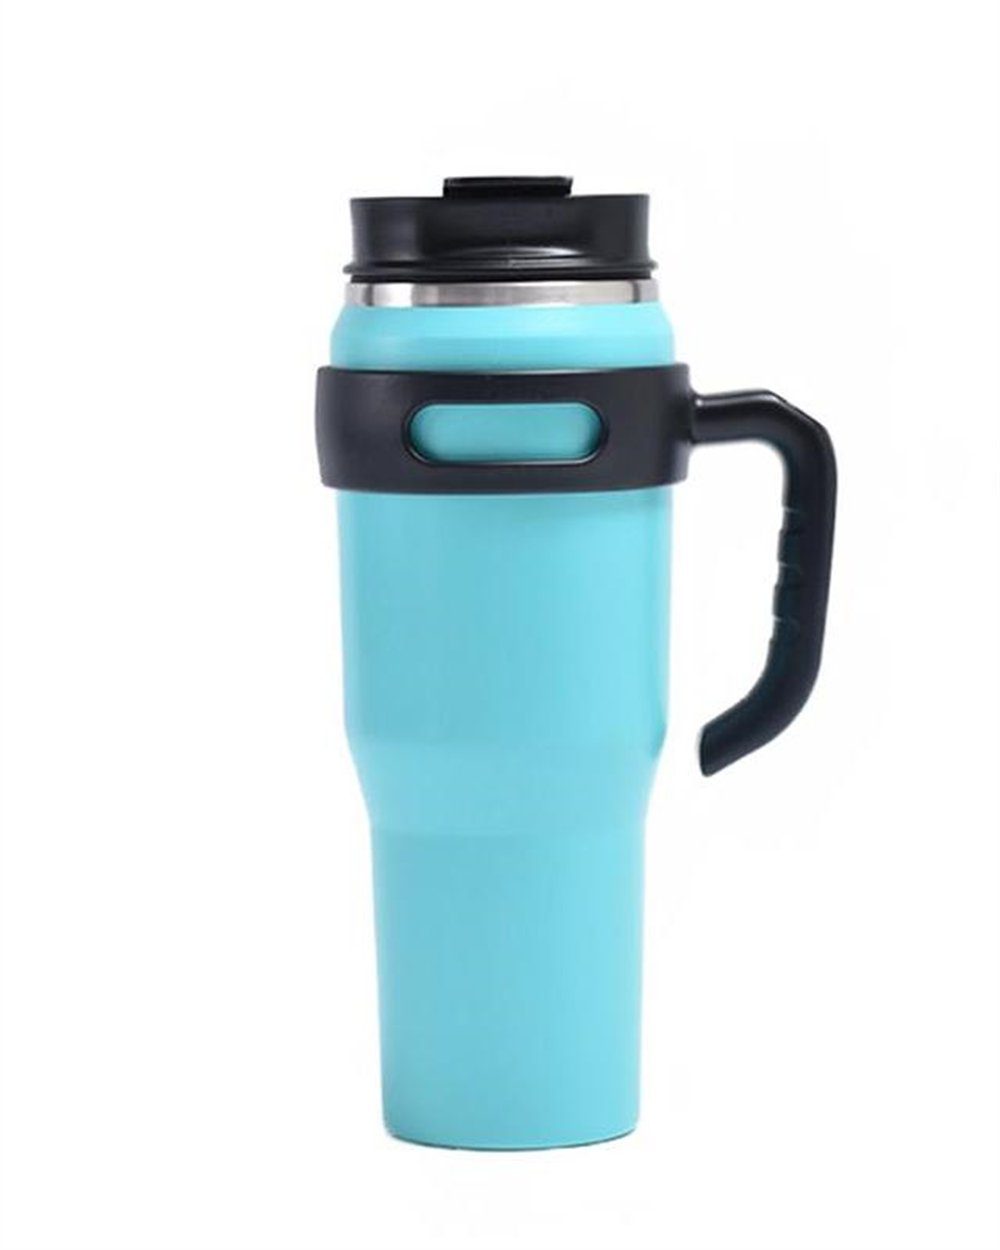 Rouemi Isolierflasche Doppelwandig Vakuum Thermosflasche,mit Henkel Trinkbecher 1000ml, Heiß- und Kaltgetränke Isolierung,12h heiß/24h kalt Hellblau